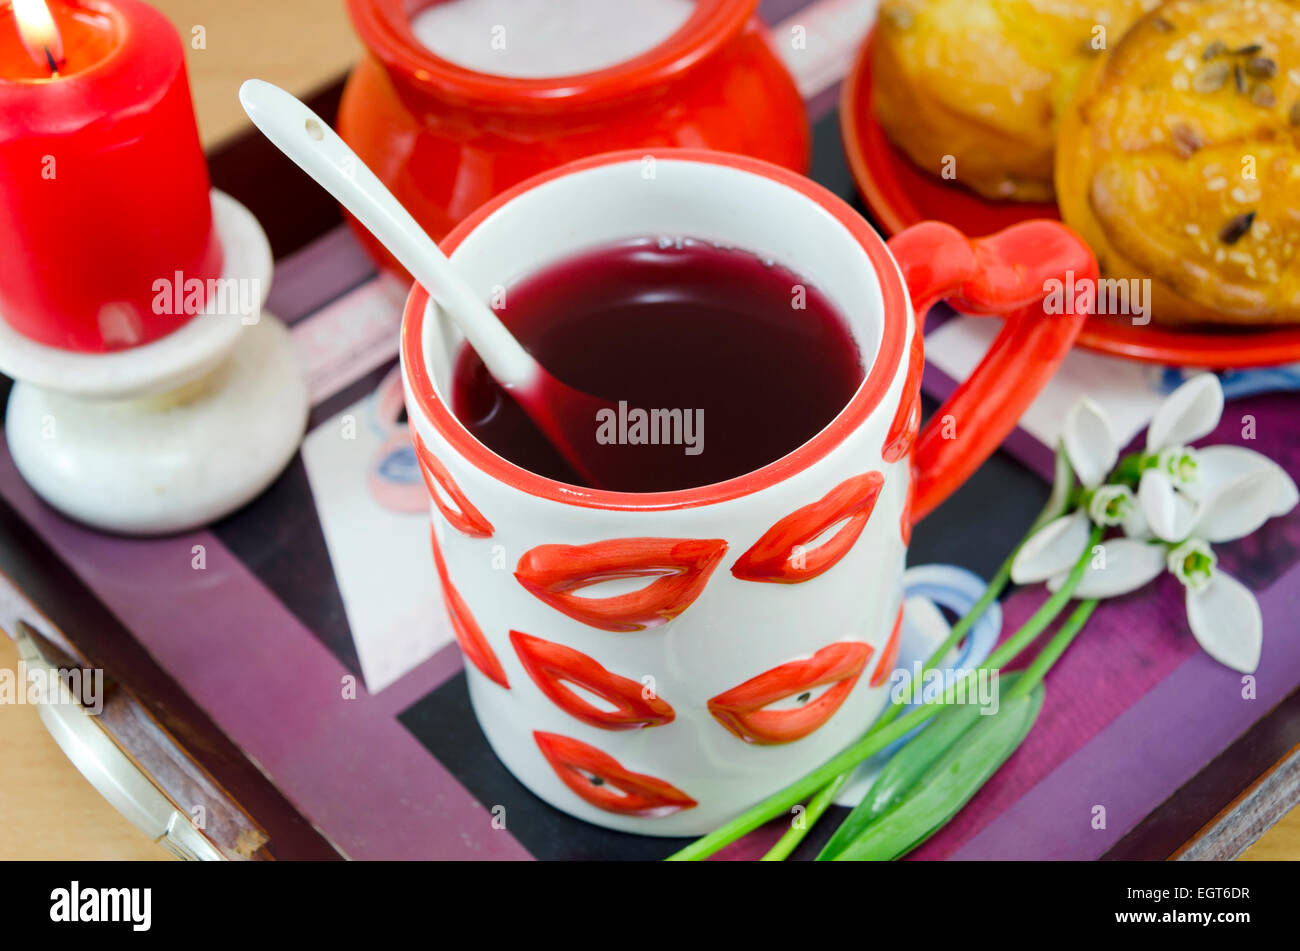 Labbro modellato tazza di tè su un vassoio con bucaneve, cornbread, zucchero e una candela che brucia in background Foto Stock